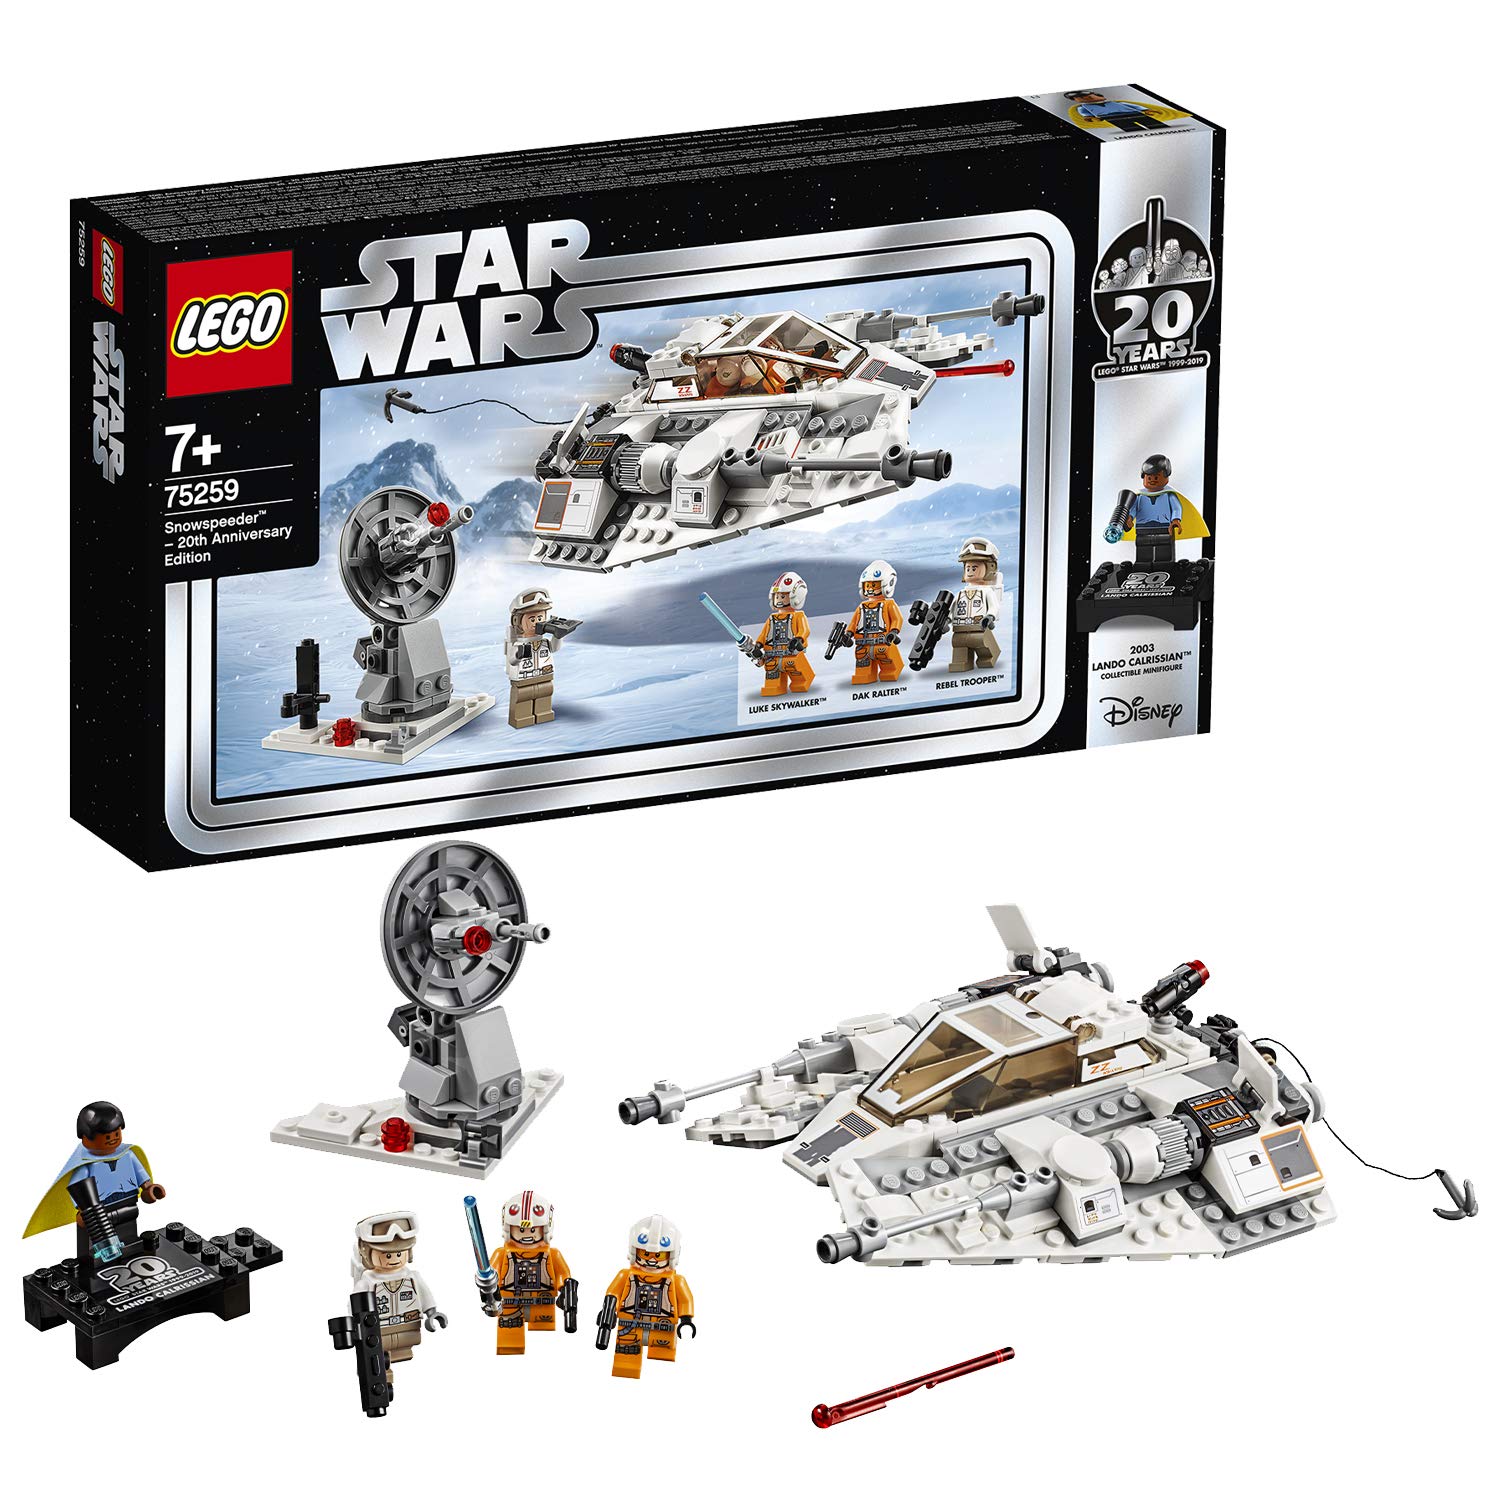 Lego Star Wars 75259 - The Empire Strikes Back Snowspeeder - 20 Years Lego 